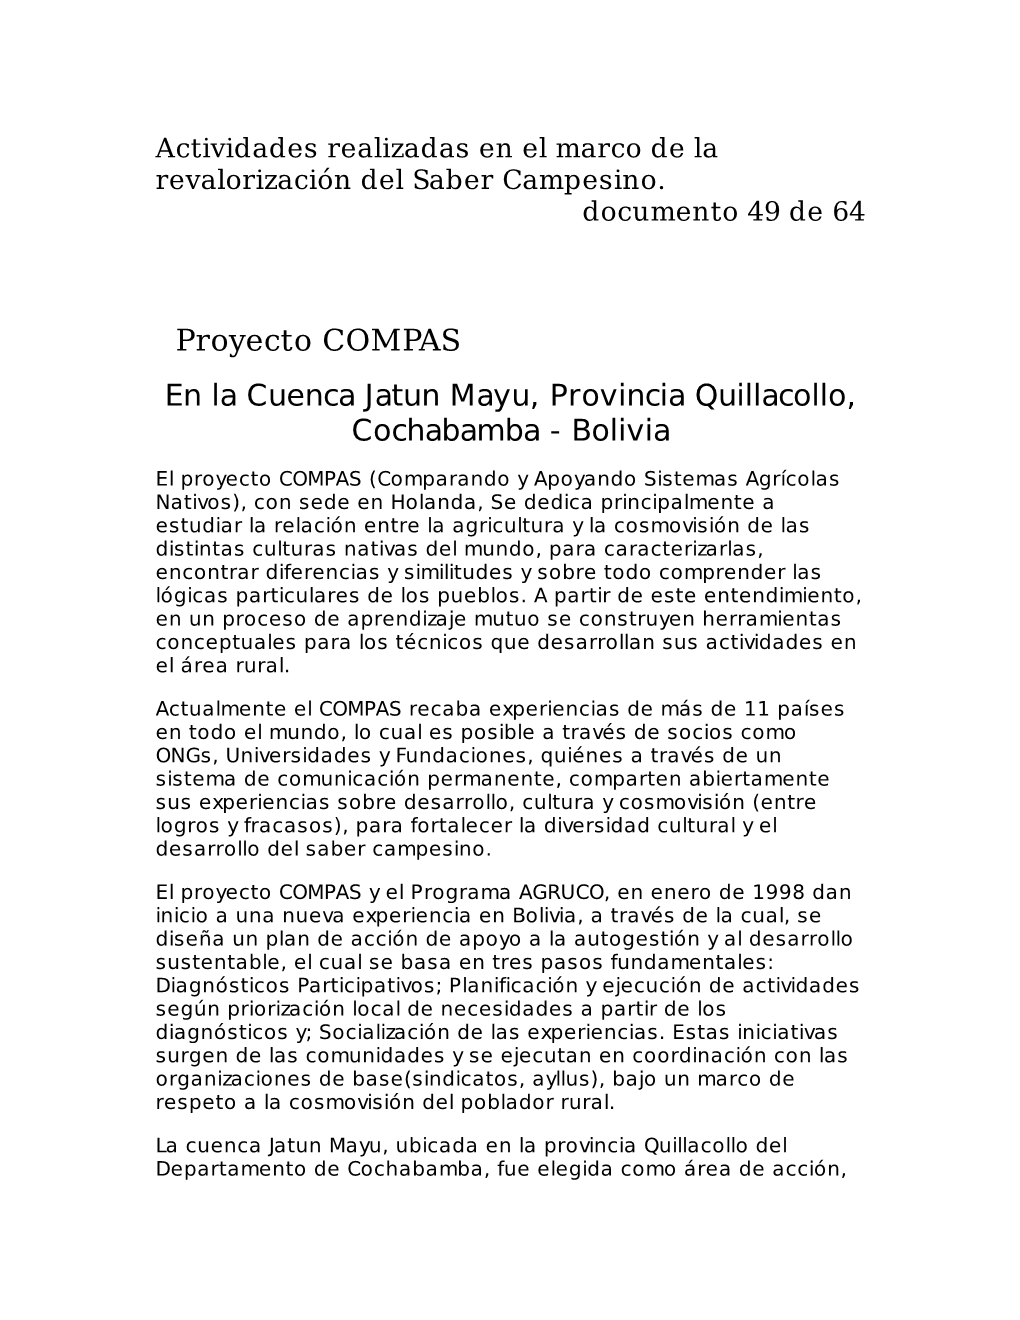 Proyecto COMPAS En La Cuenca Jatun Mayu, Provincia Quillacollo, Cochabamba - Bolivia